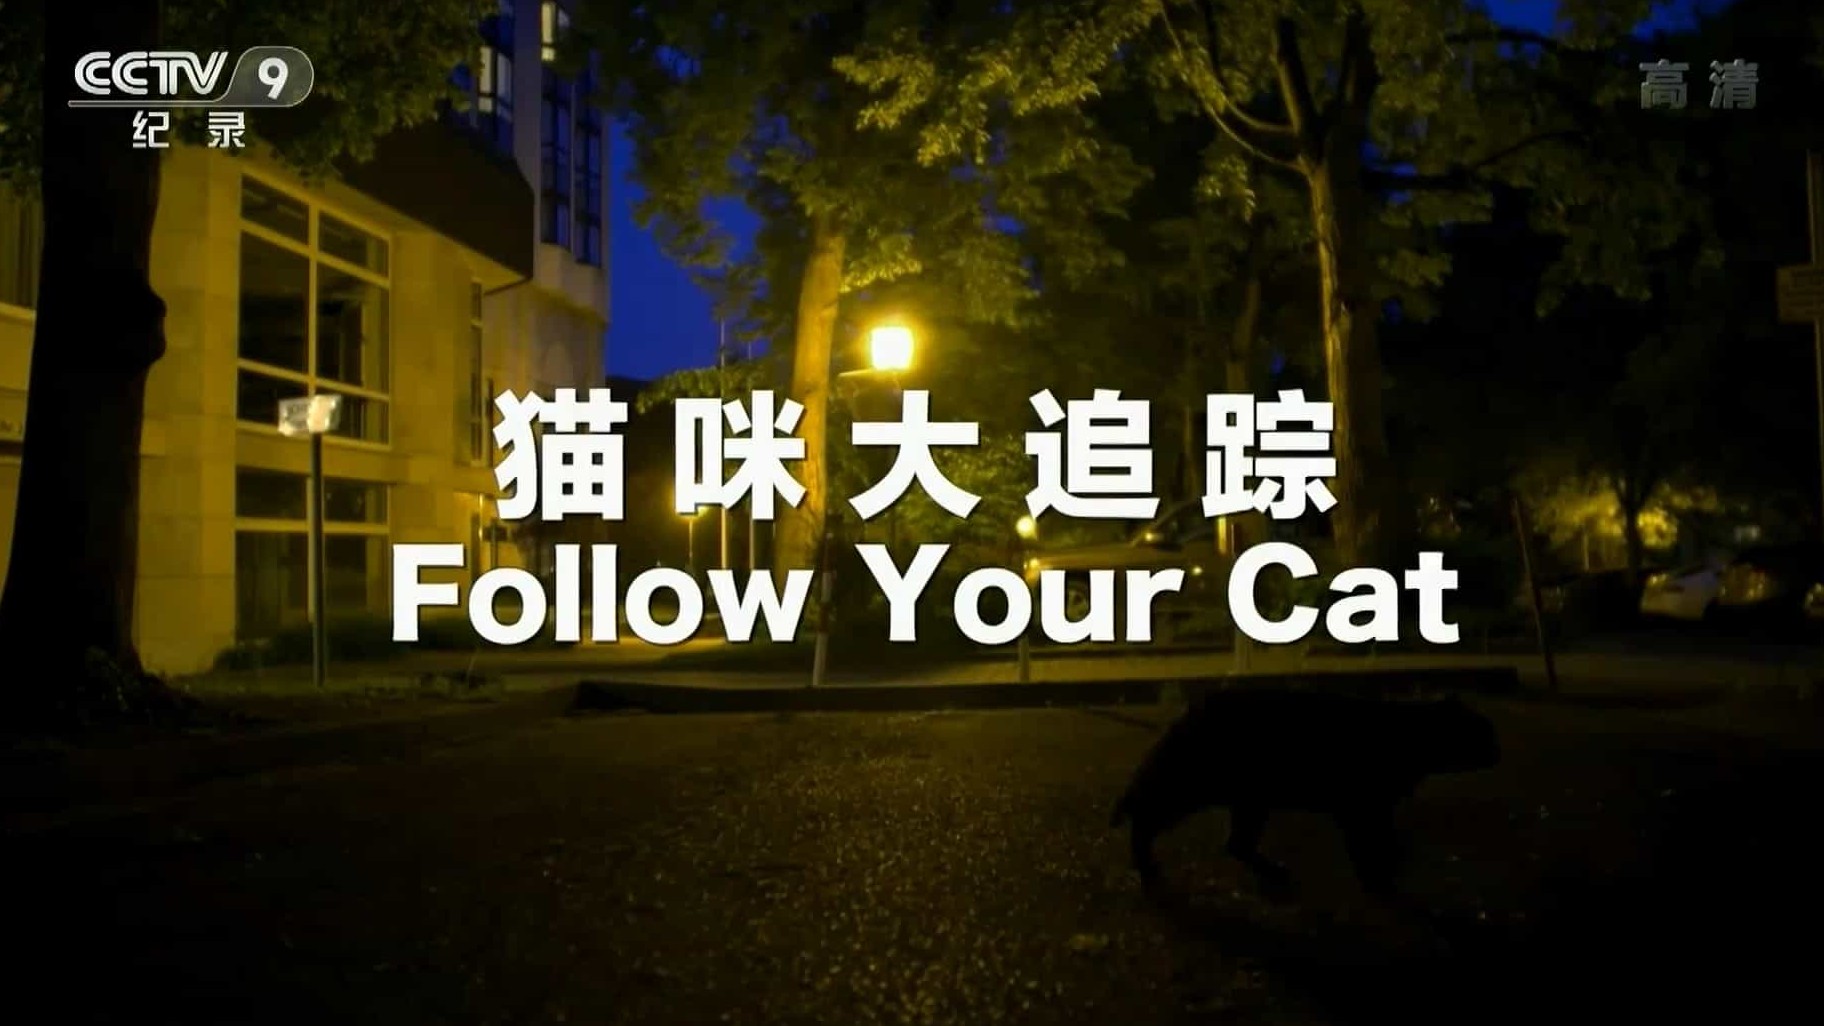 央视纪录片/萌宠系列《猫咪大追踪 Follow Your Cat》国语中字 1080P高清下载